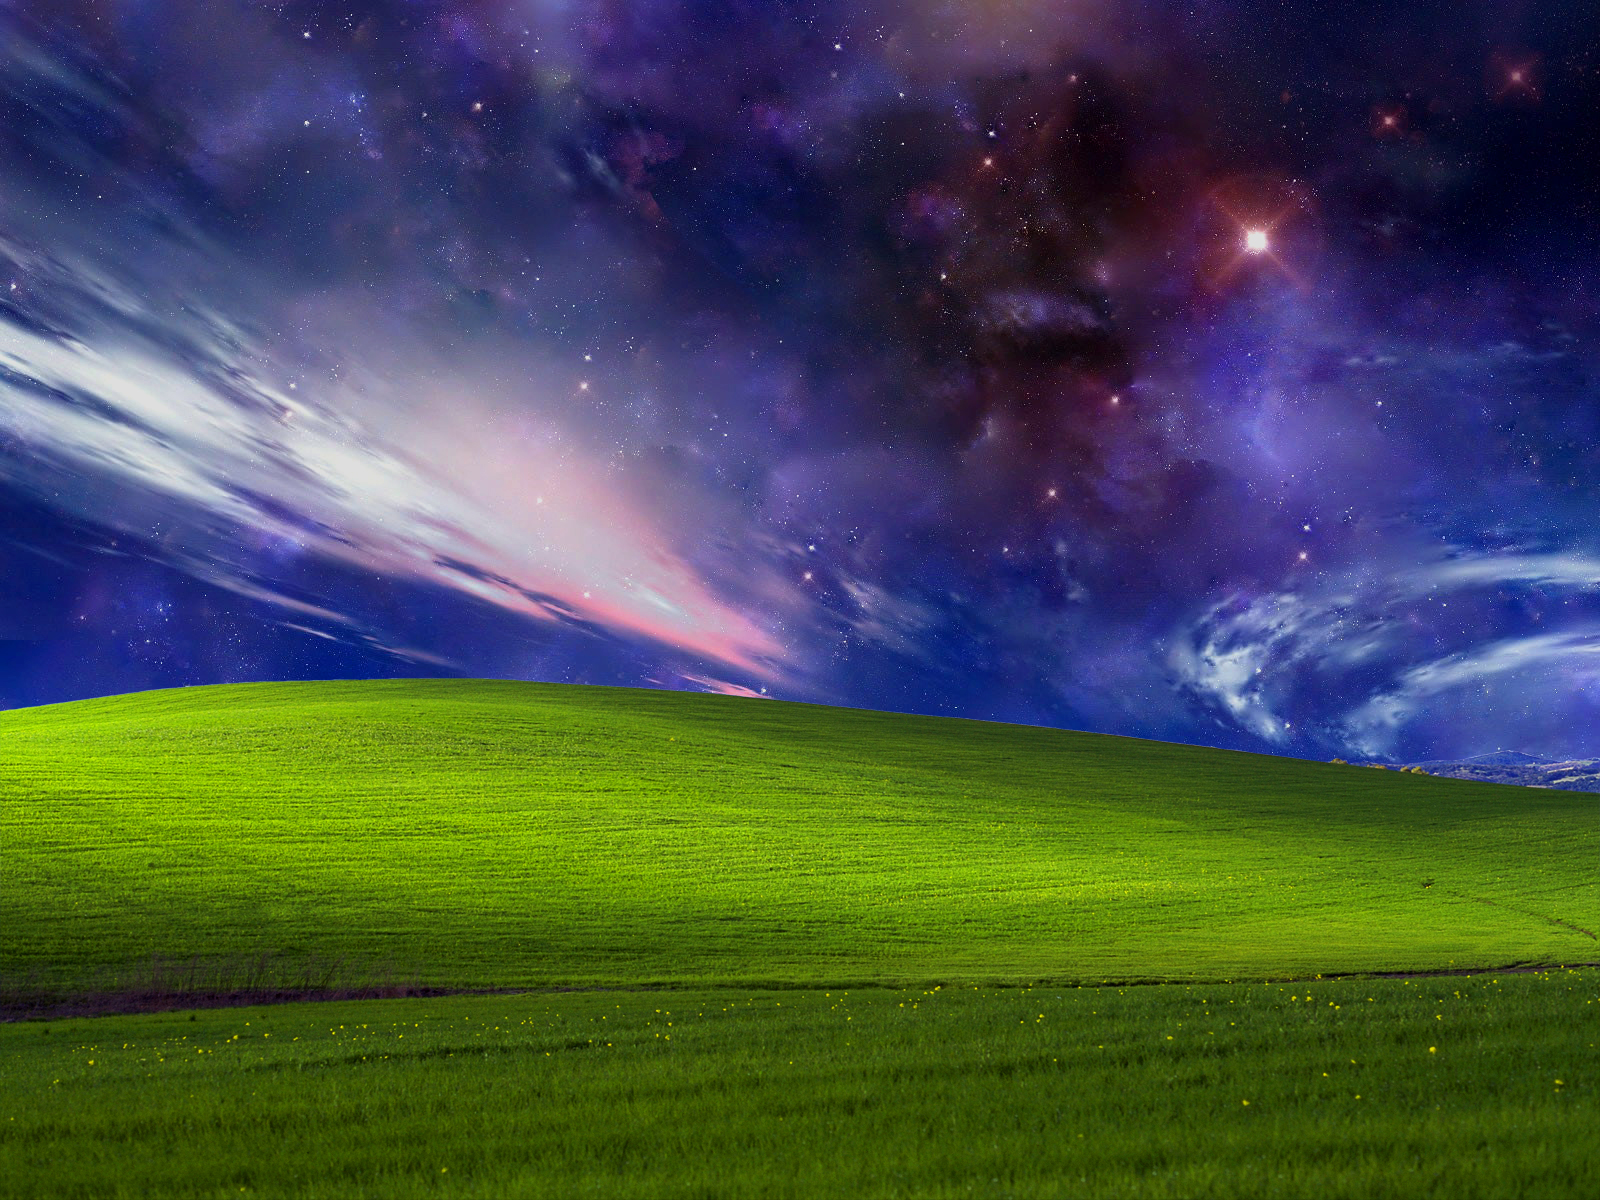 Hình nền Windows Thiên Hà: Bạn muốn một màn hình đẹp và nổi bật? Hãy trang trí nó với Hình nền Windows Thiên Hà! Được thiết kế đặc biệt cho hệ điều hành Windows, những hình ảnh sống động và lung linh sẽ giúp bạn tạo nên một không gian làm việc tràn đầy năng lượng. Tải ngay để trải nghiệm thôi nào!